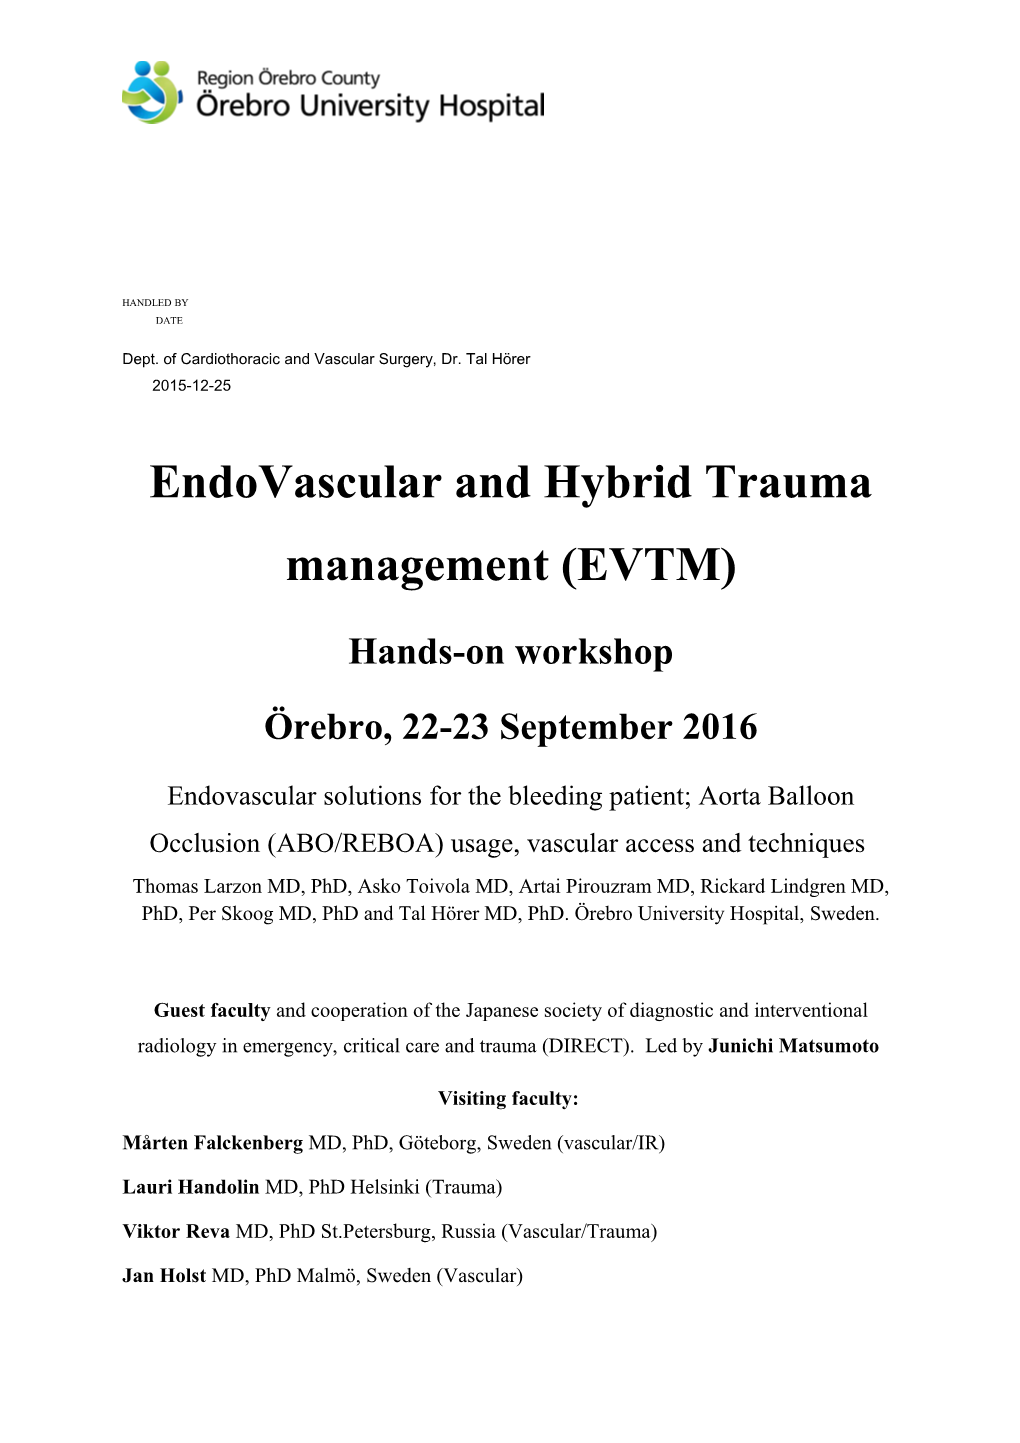 Endovascular and Hybridtrauma Management (EVTM)